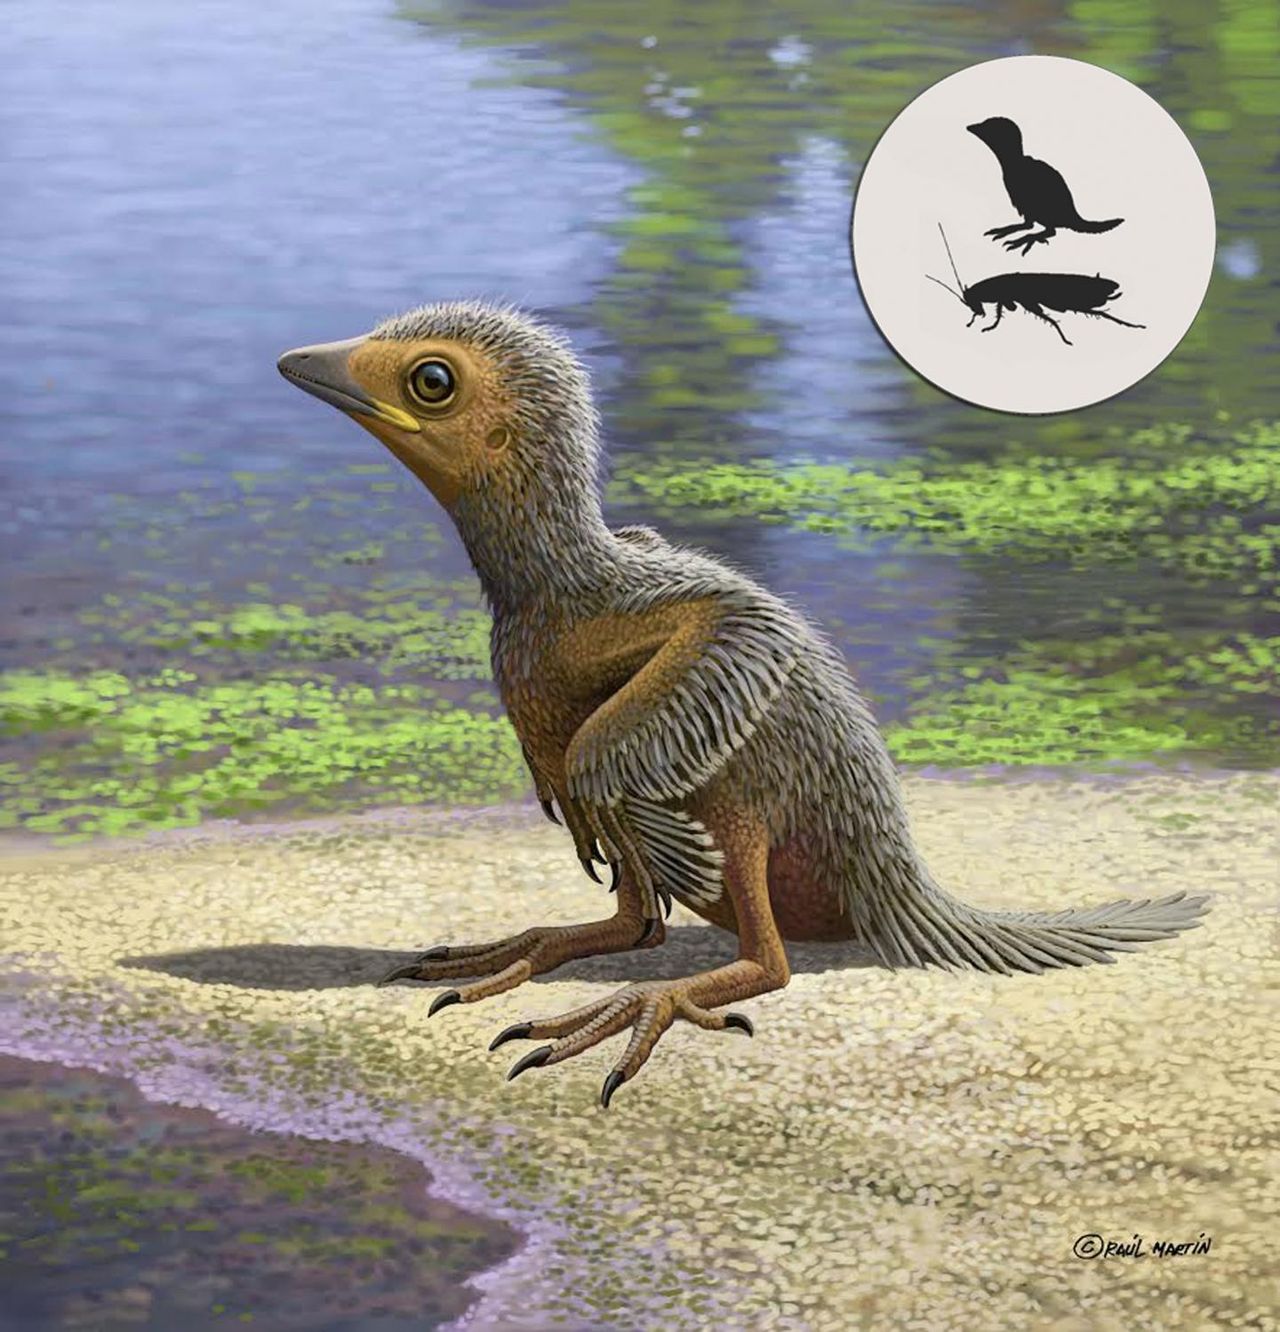 Fossil från jätteliten fågel hittat i Spanien